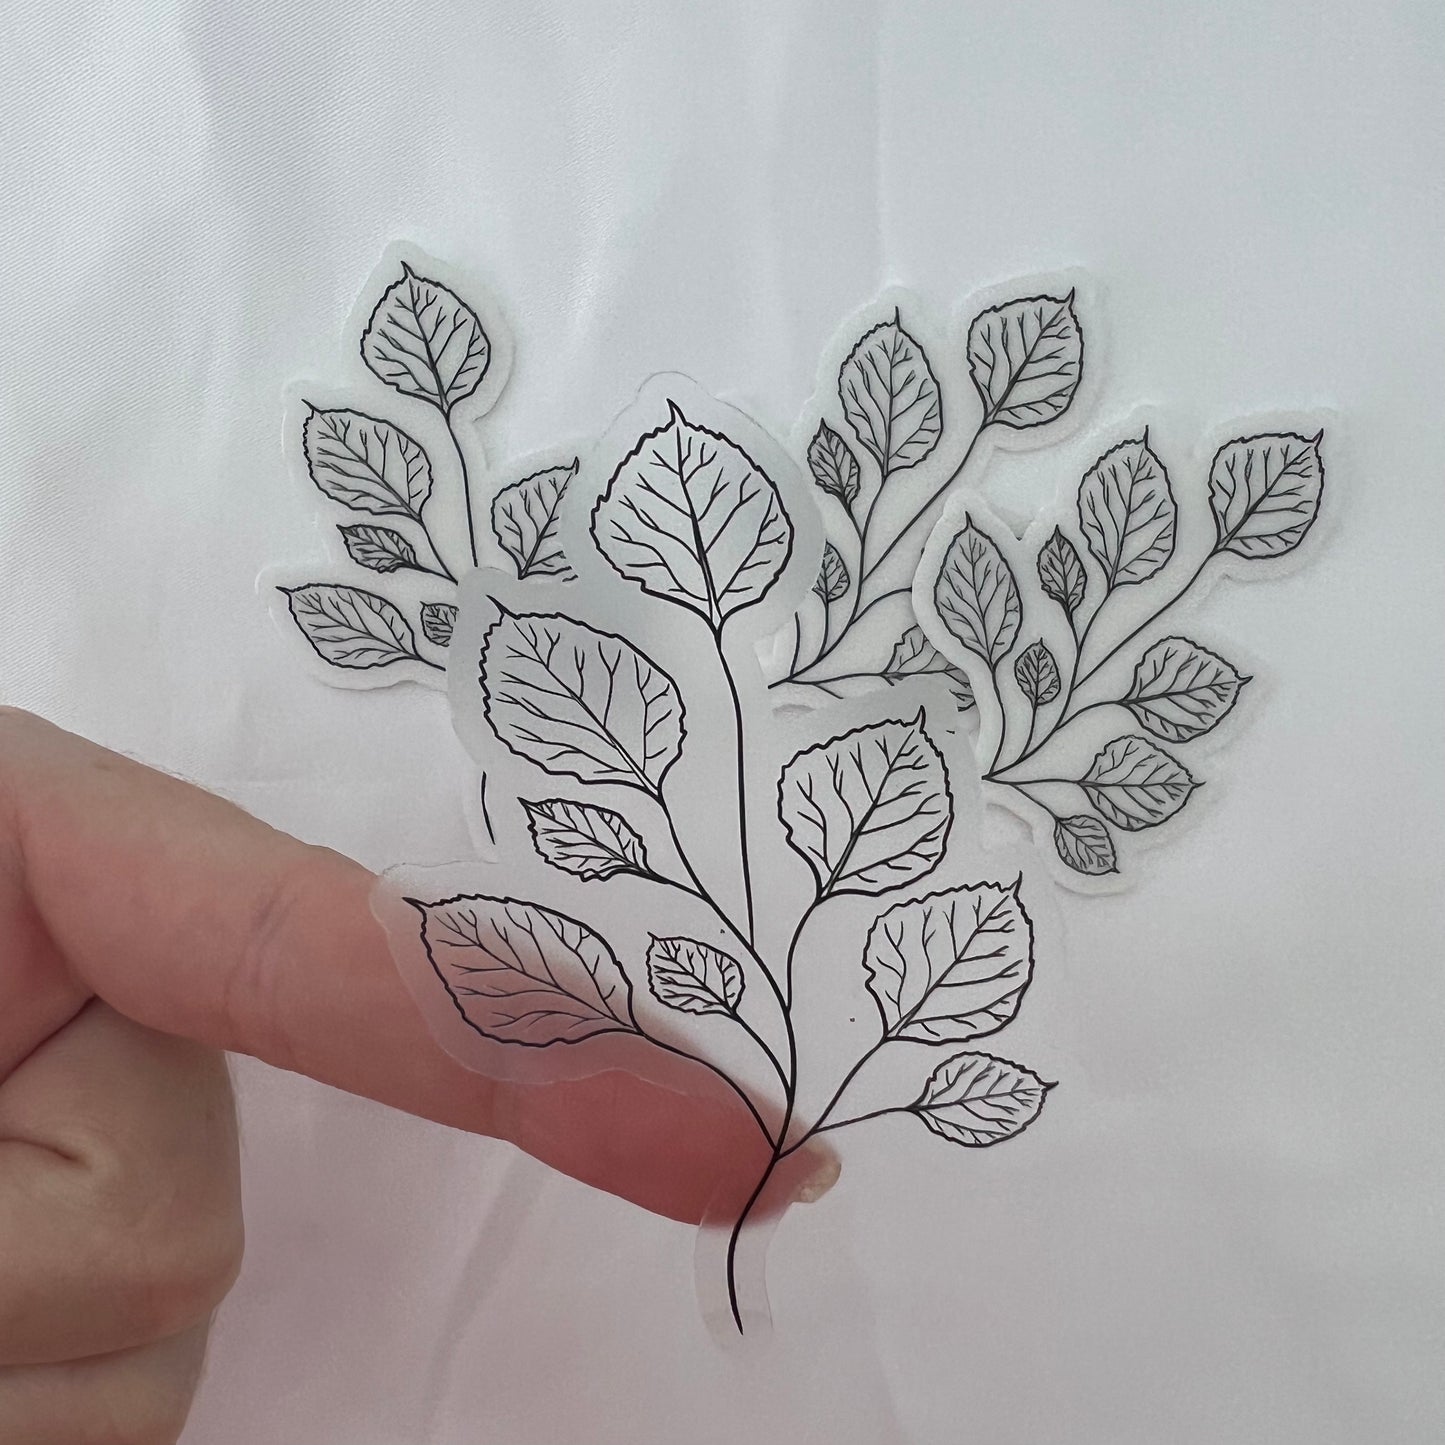 CLEAR Aspen Leaf Waterproof Vinyl Sticker